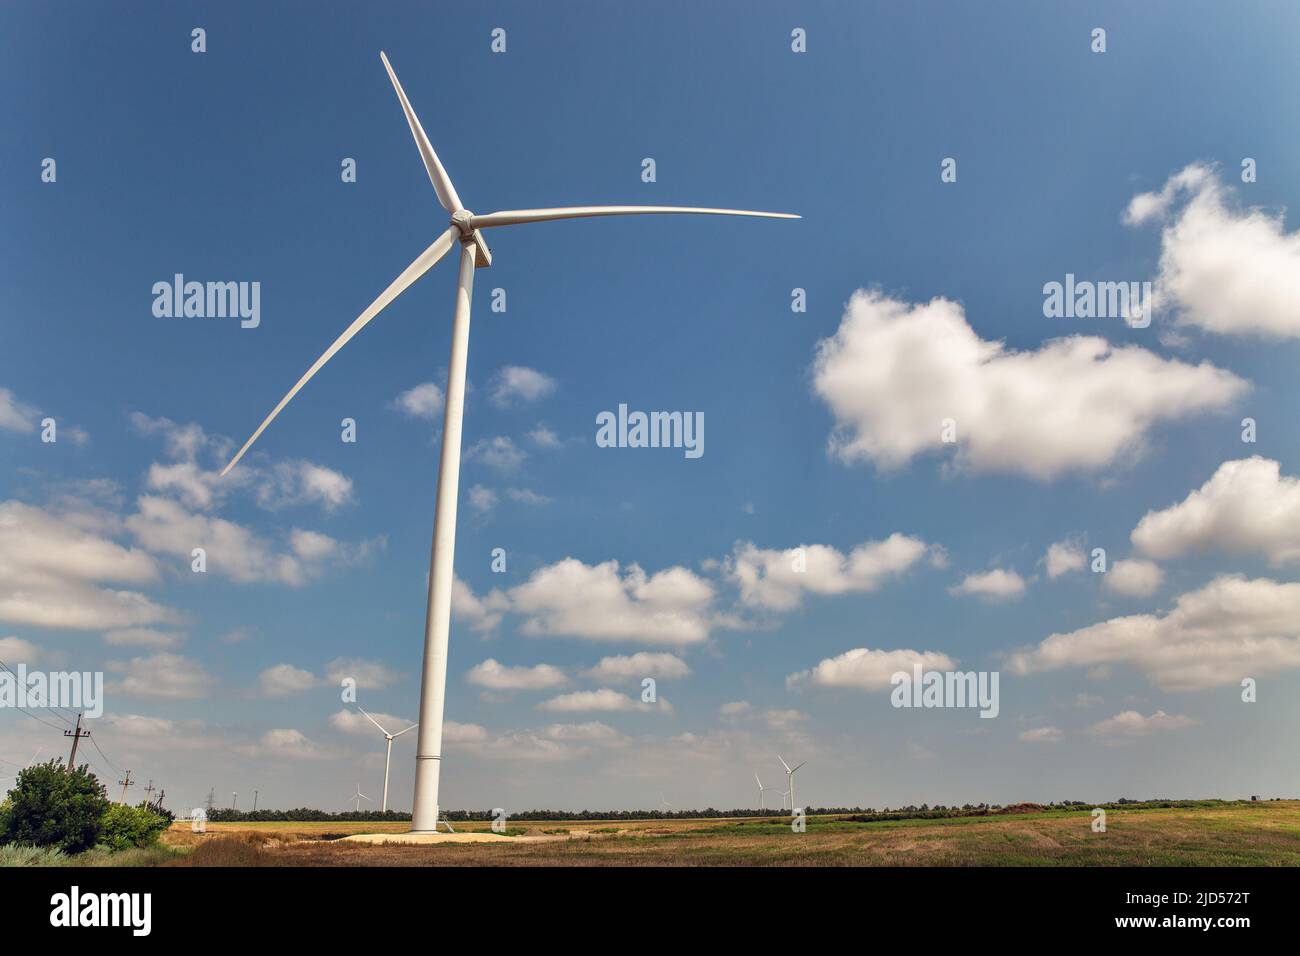 Vue panoramique sur le parc éolien ou le parc éolien, avec des éoliennes hautes pour la production d'électricité avec un espace de copie. Concept d'énergie verte. Banque D'Images